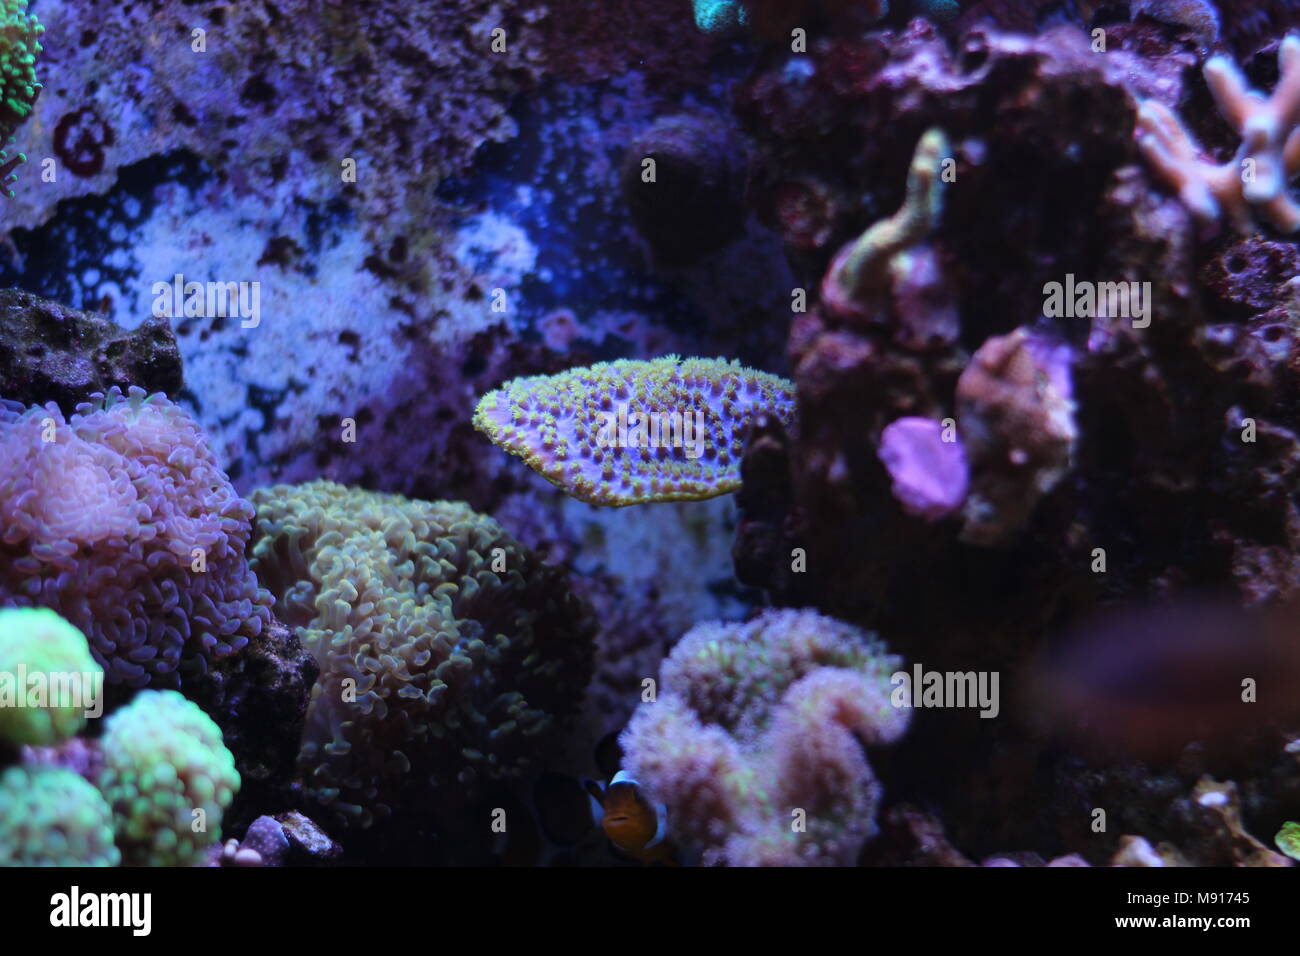 Dream saltwater coral reef aquarium scene Stock Photo